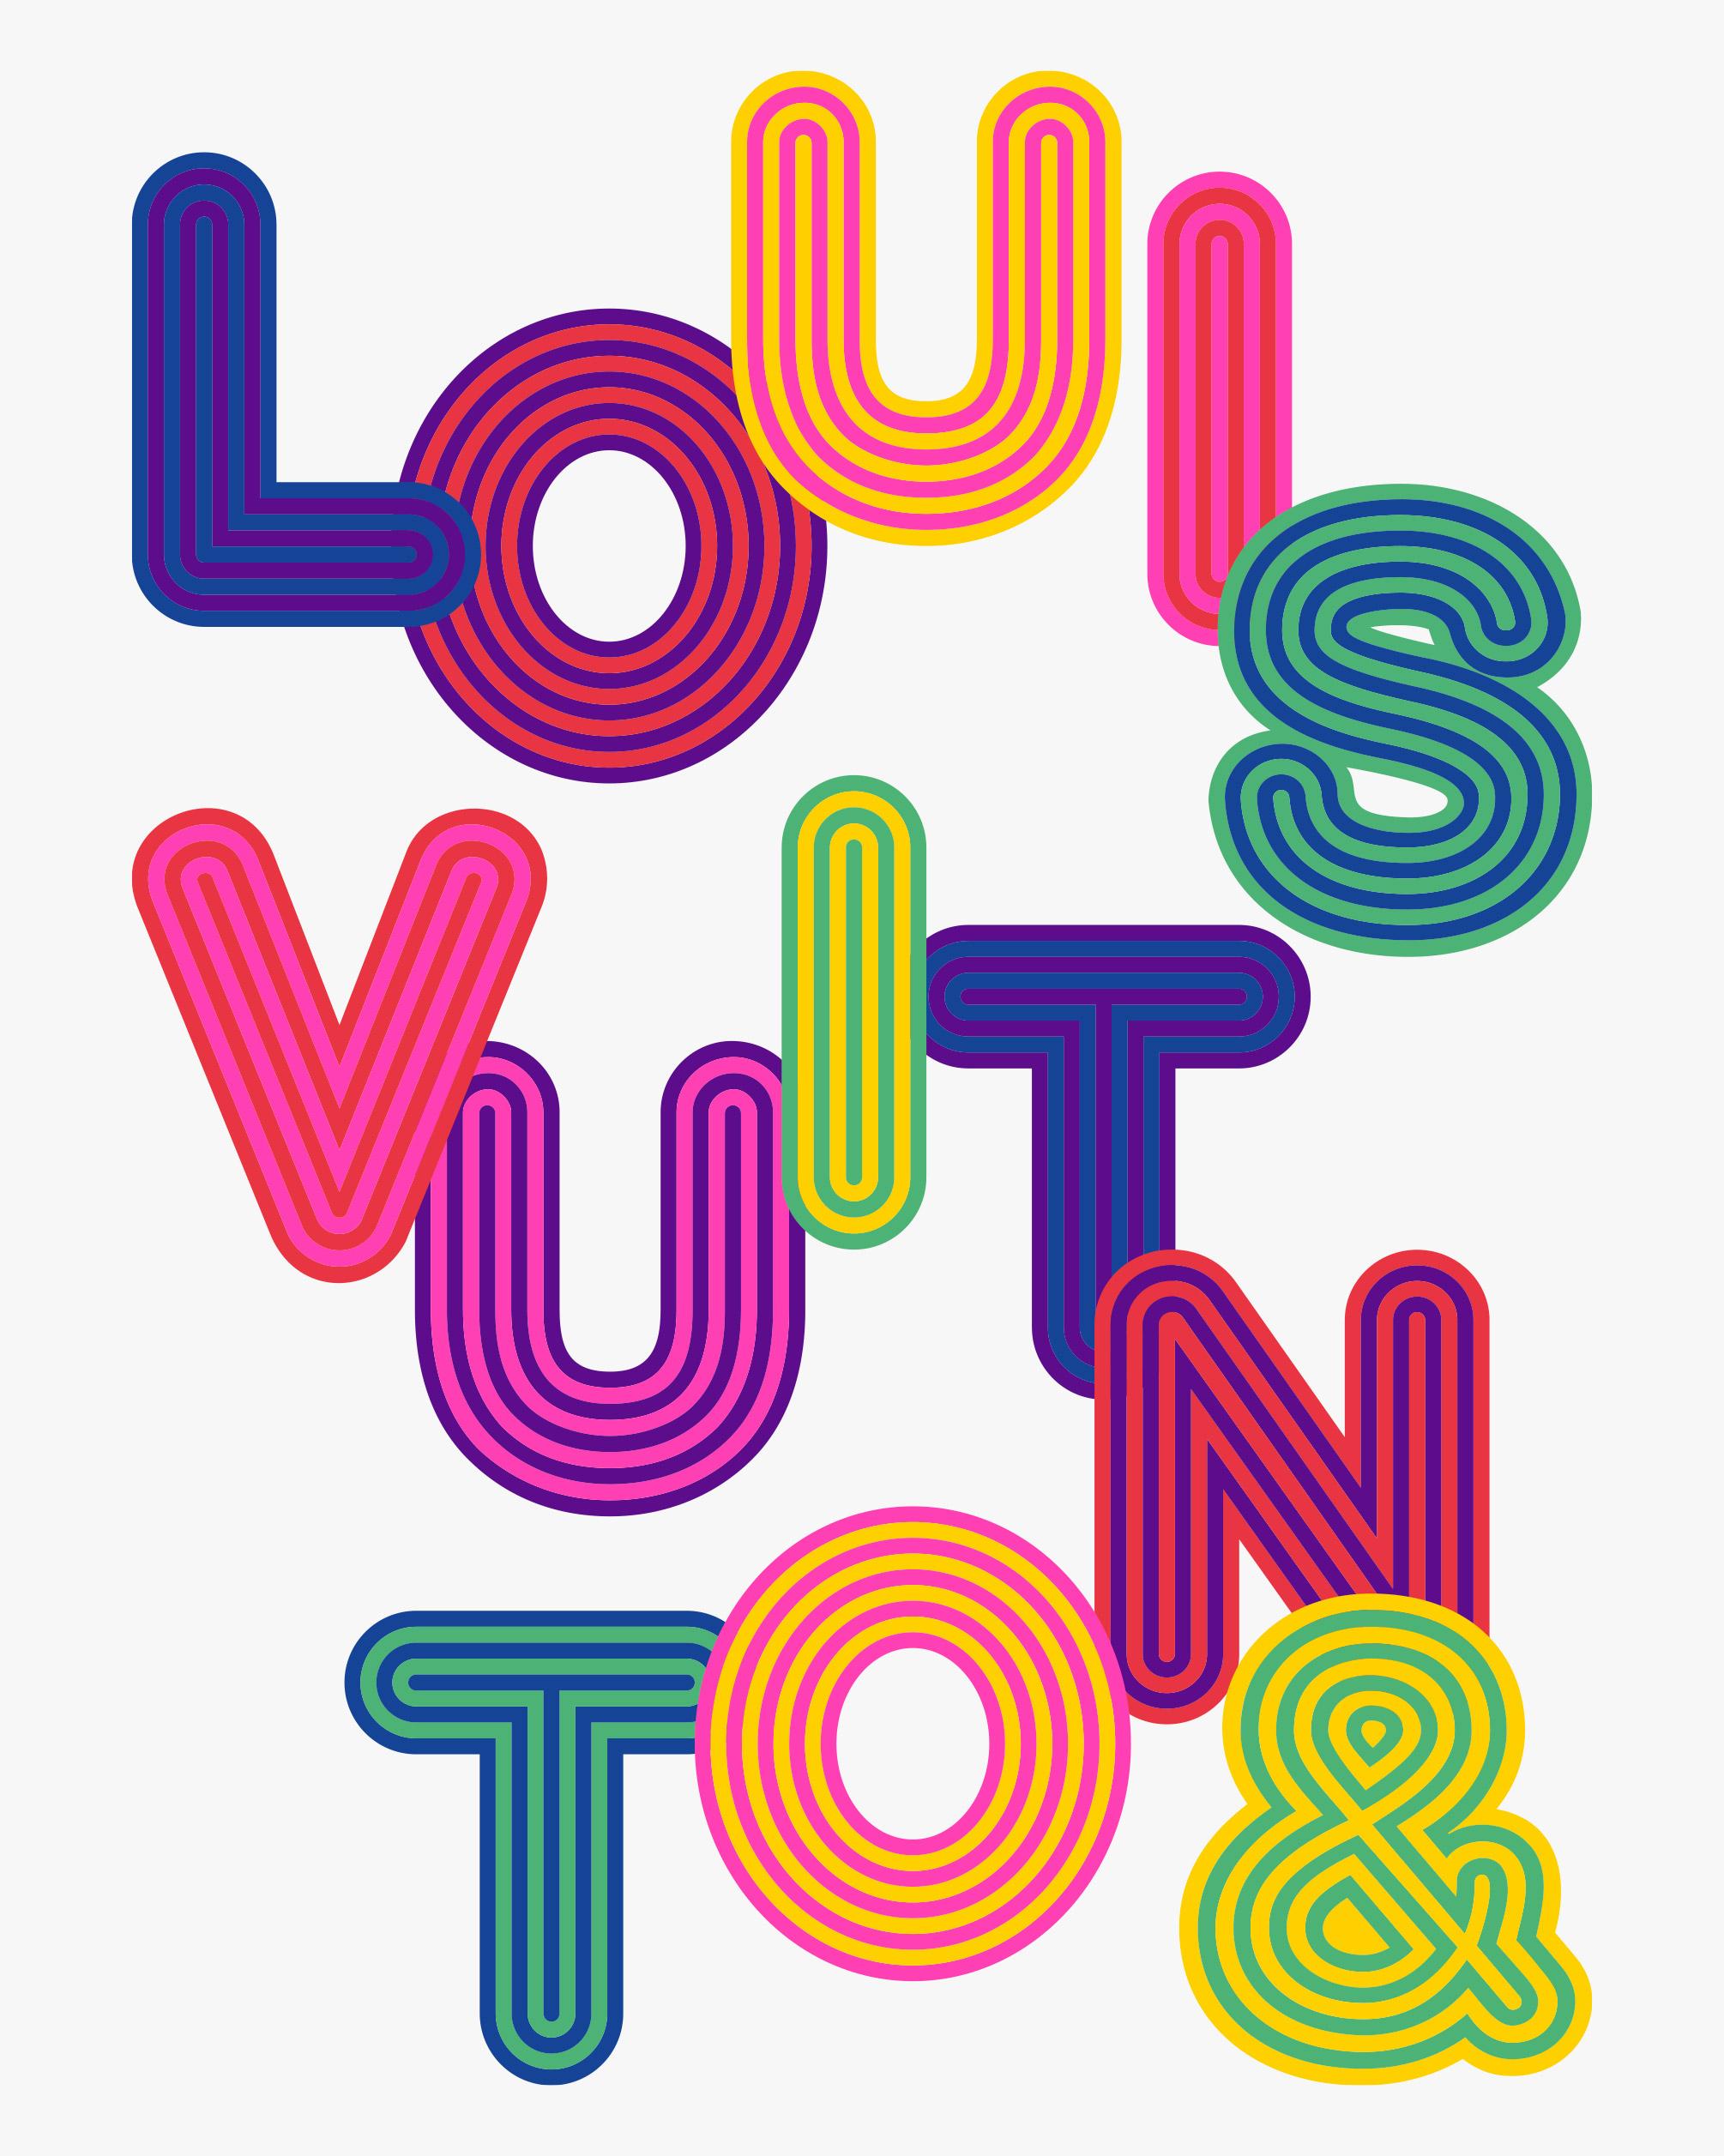 Louis Vuitton &